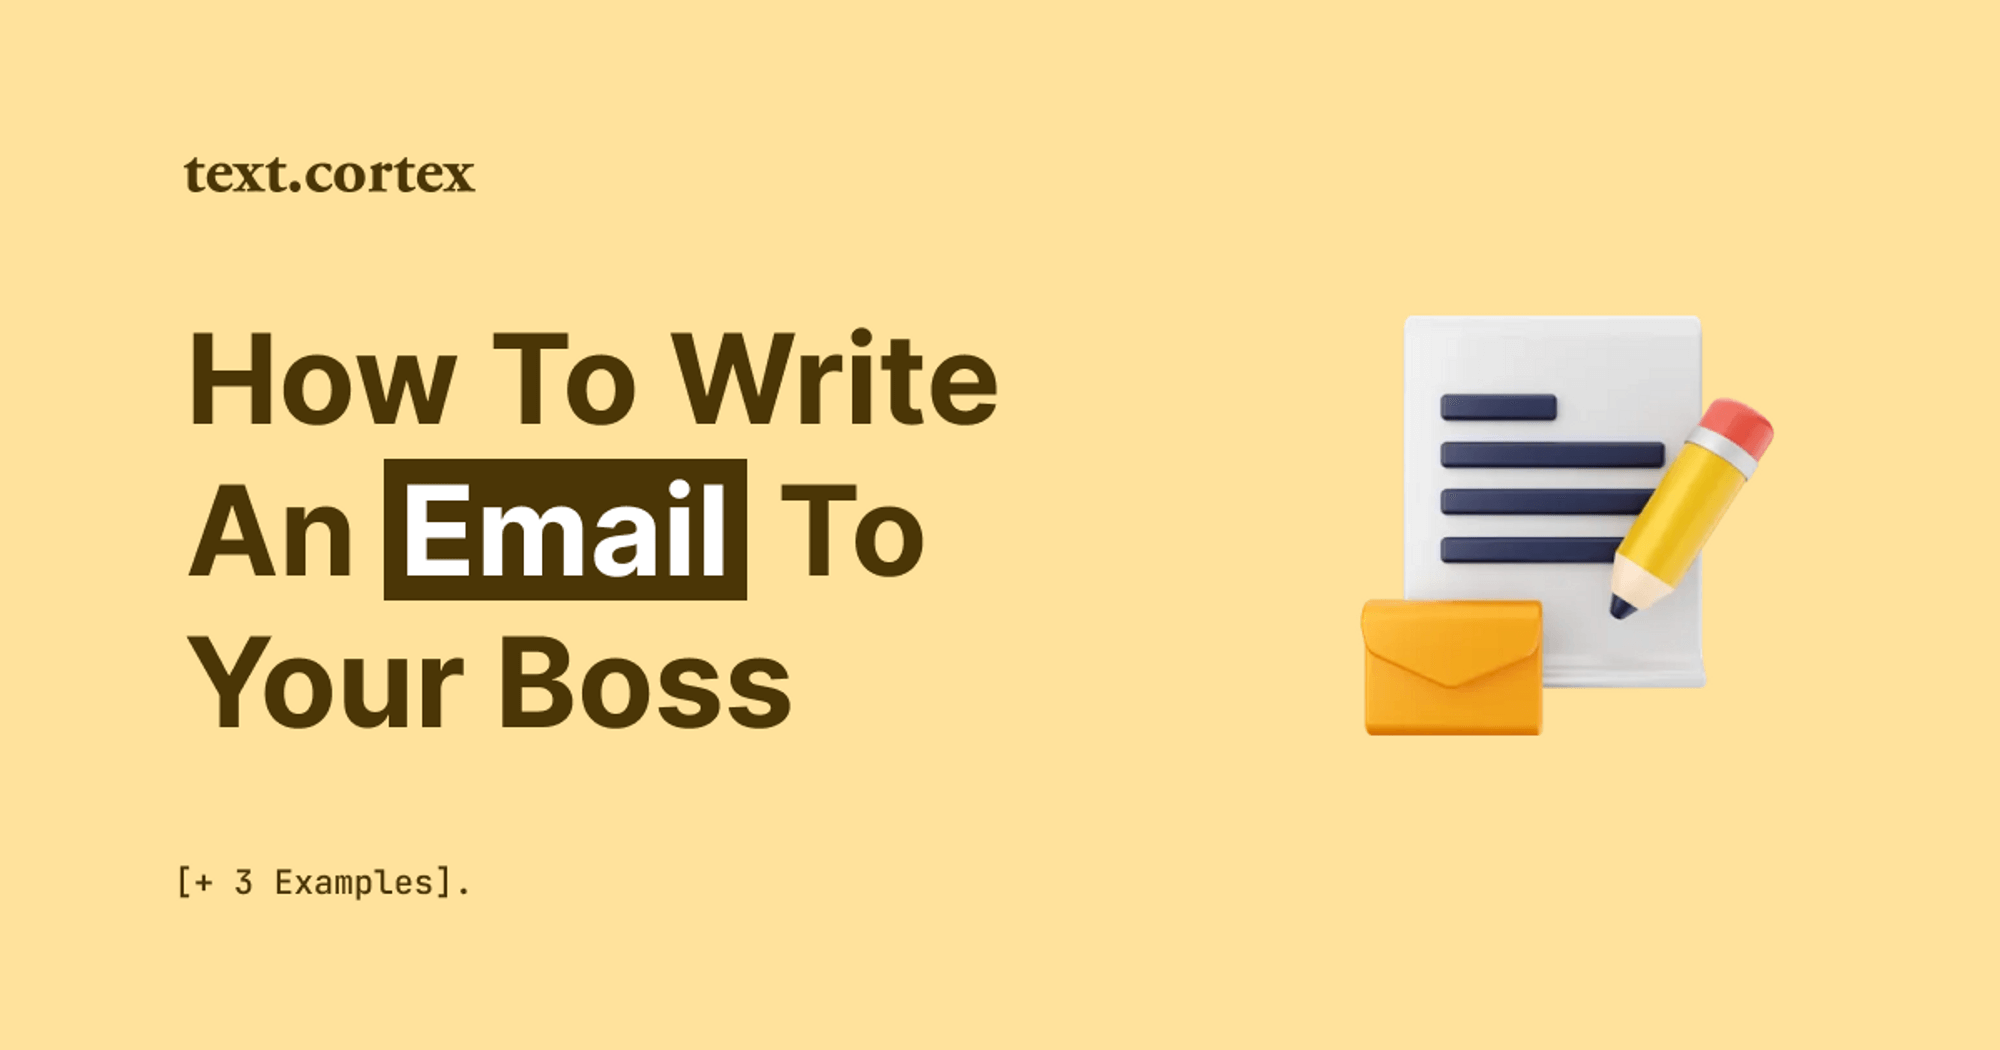 Cómo escribir un correo electrónico a tu jefe y gerente [+3 ejemplos]